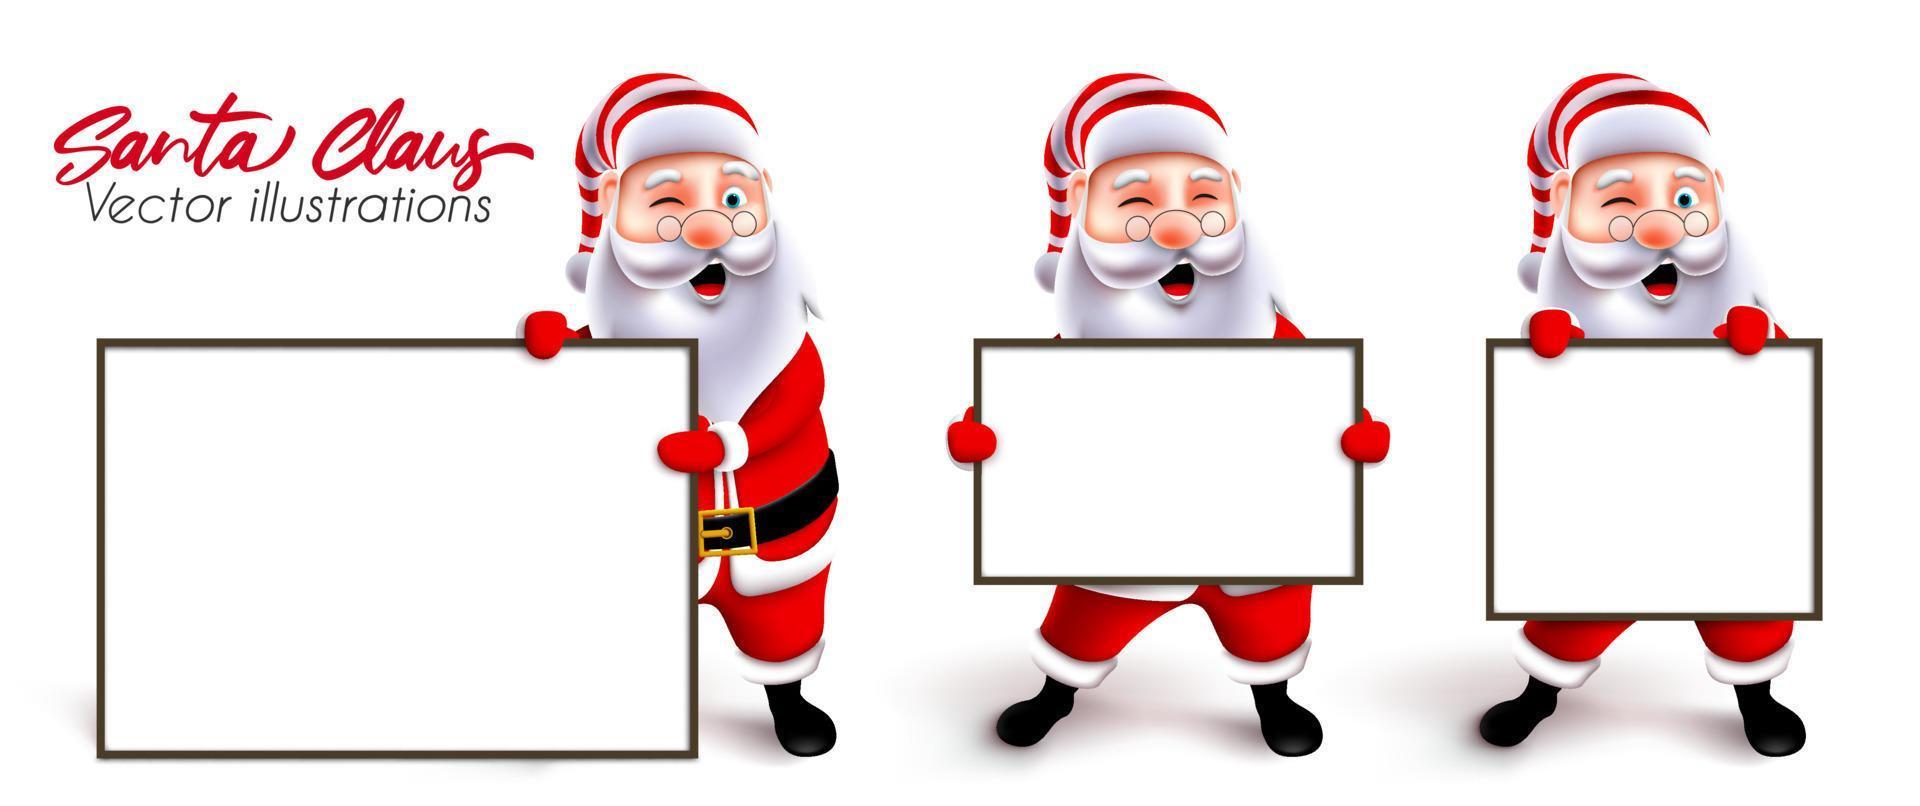 Kerstman presenteert vector tekenset. 3D-personages van kerstman die een leeg wit bordelement vasthouden en tonen voor de presentatie van de kerstgroet. vectorillustratie.